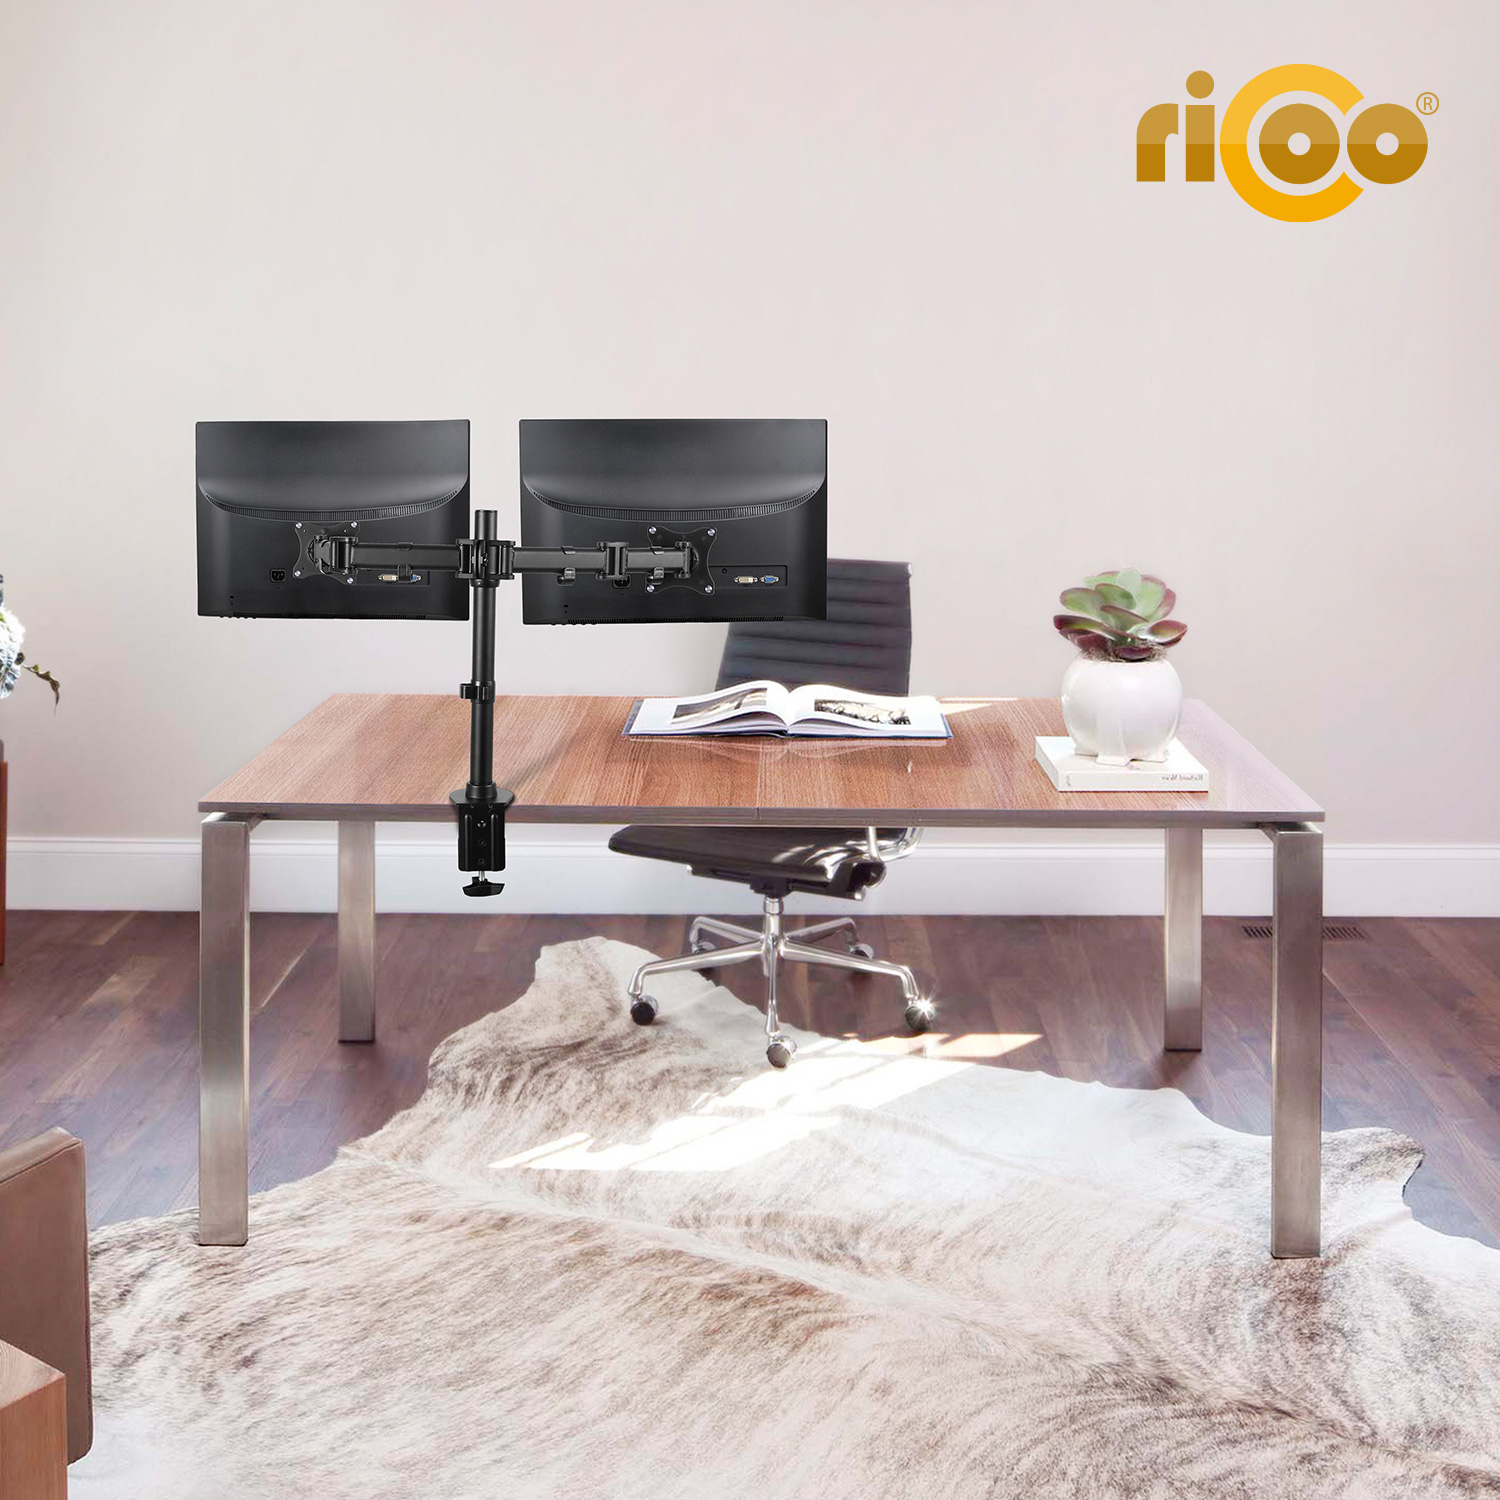 RICOO TS5811 Monitor Tischhalterung, schwarz